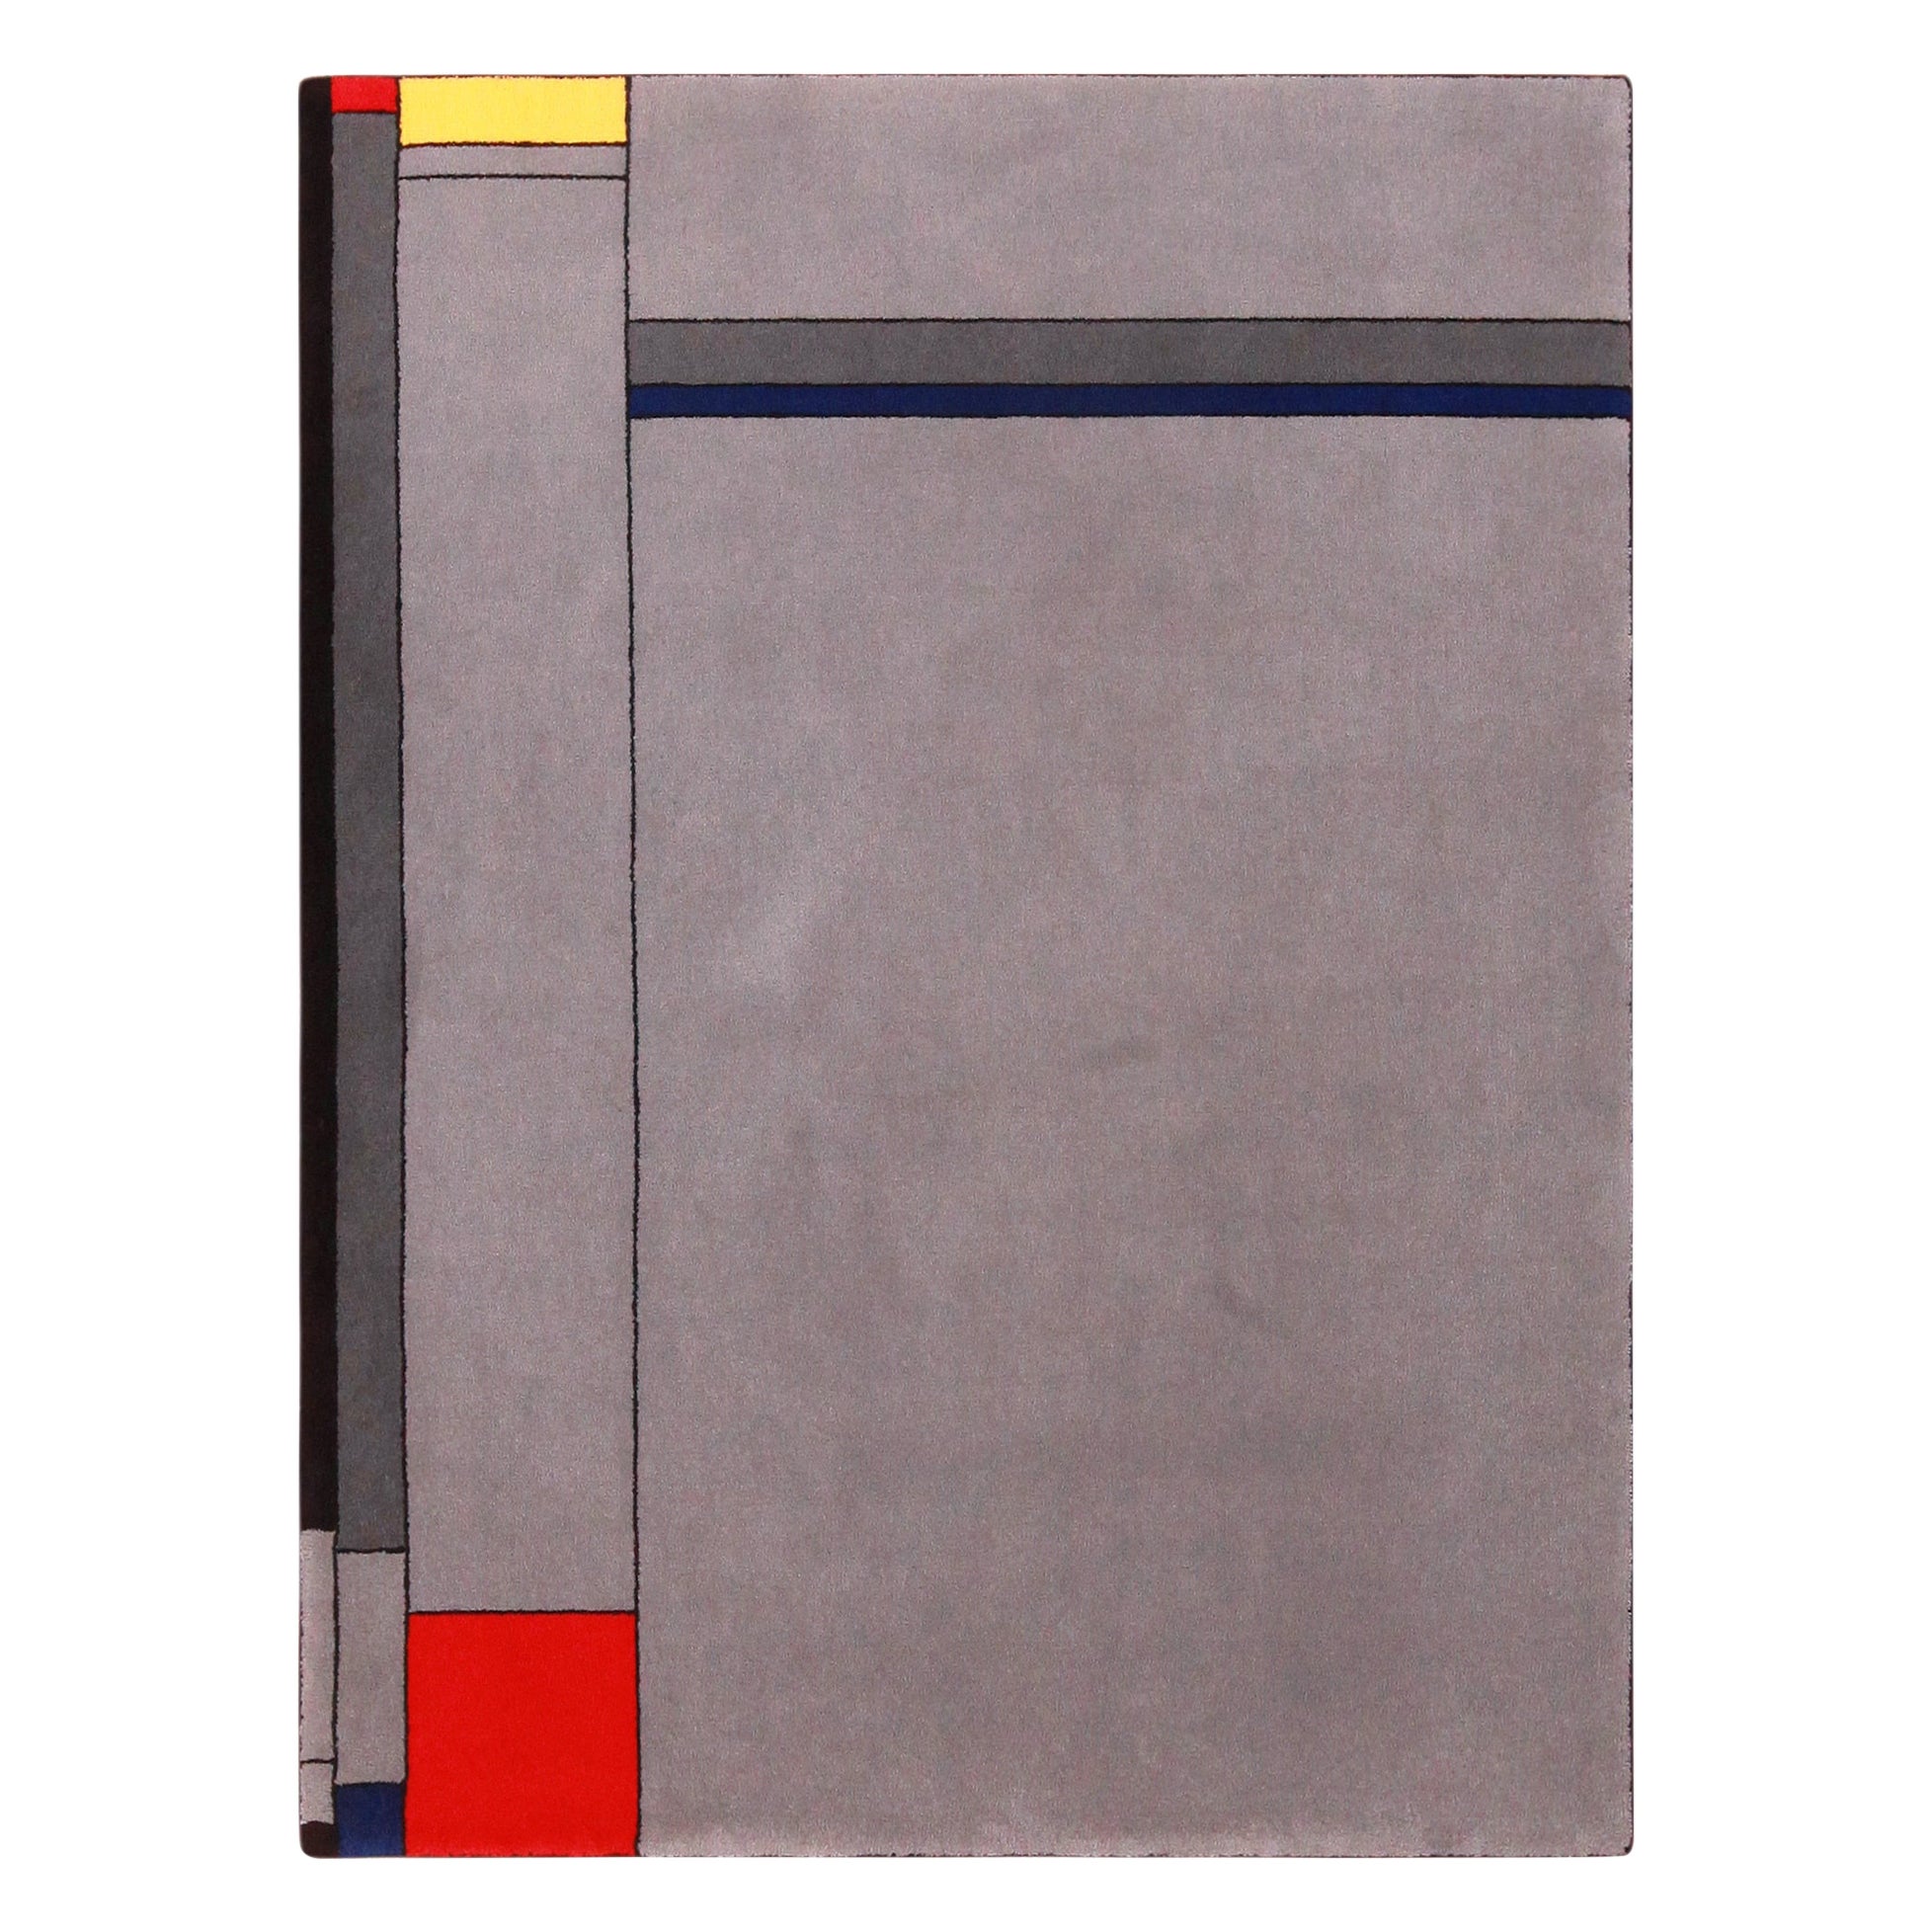 Tapis scandinave Mondrian Design vintage. 4 pieds 11 pouces x 6 pieds 7 pouces